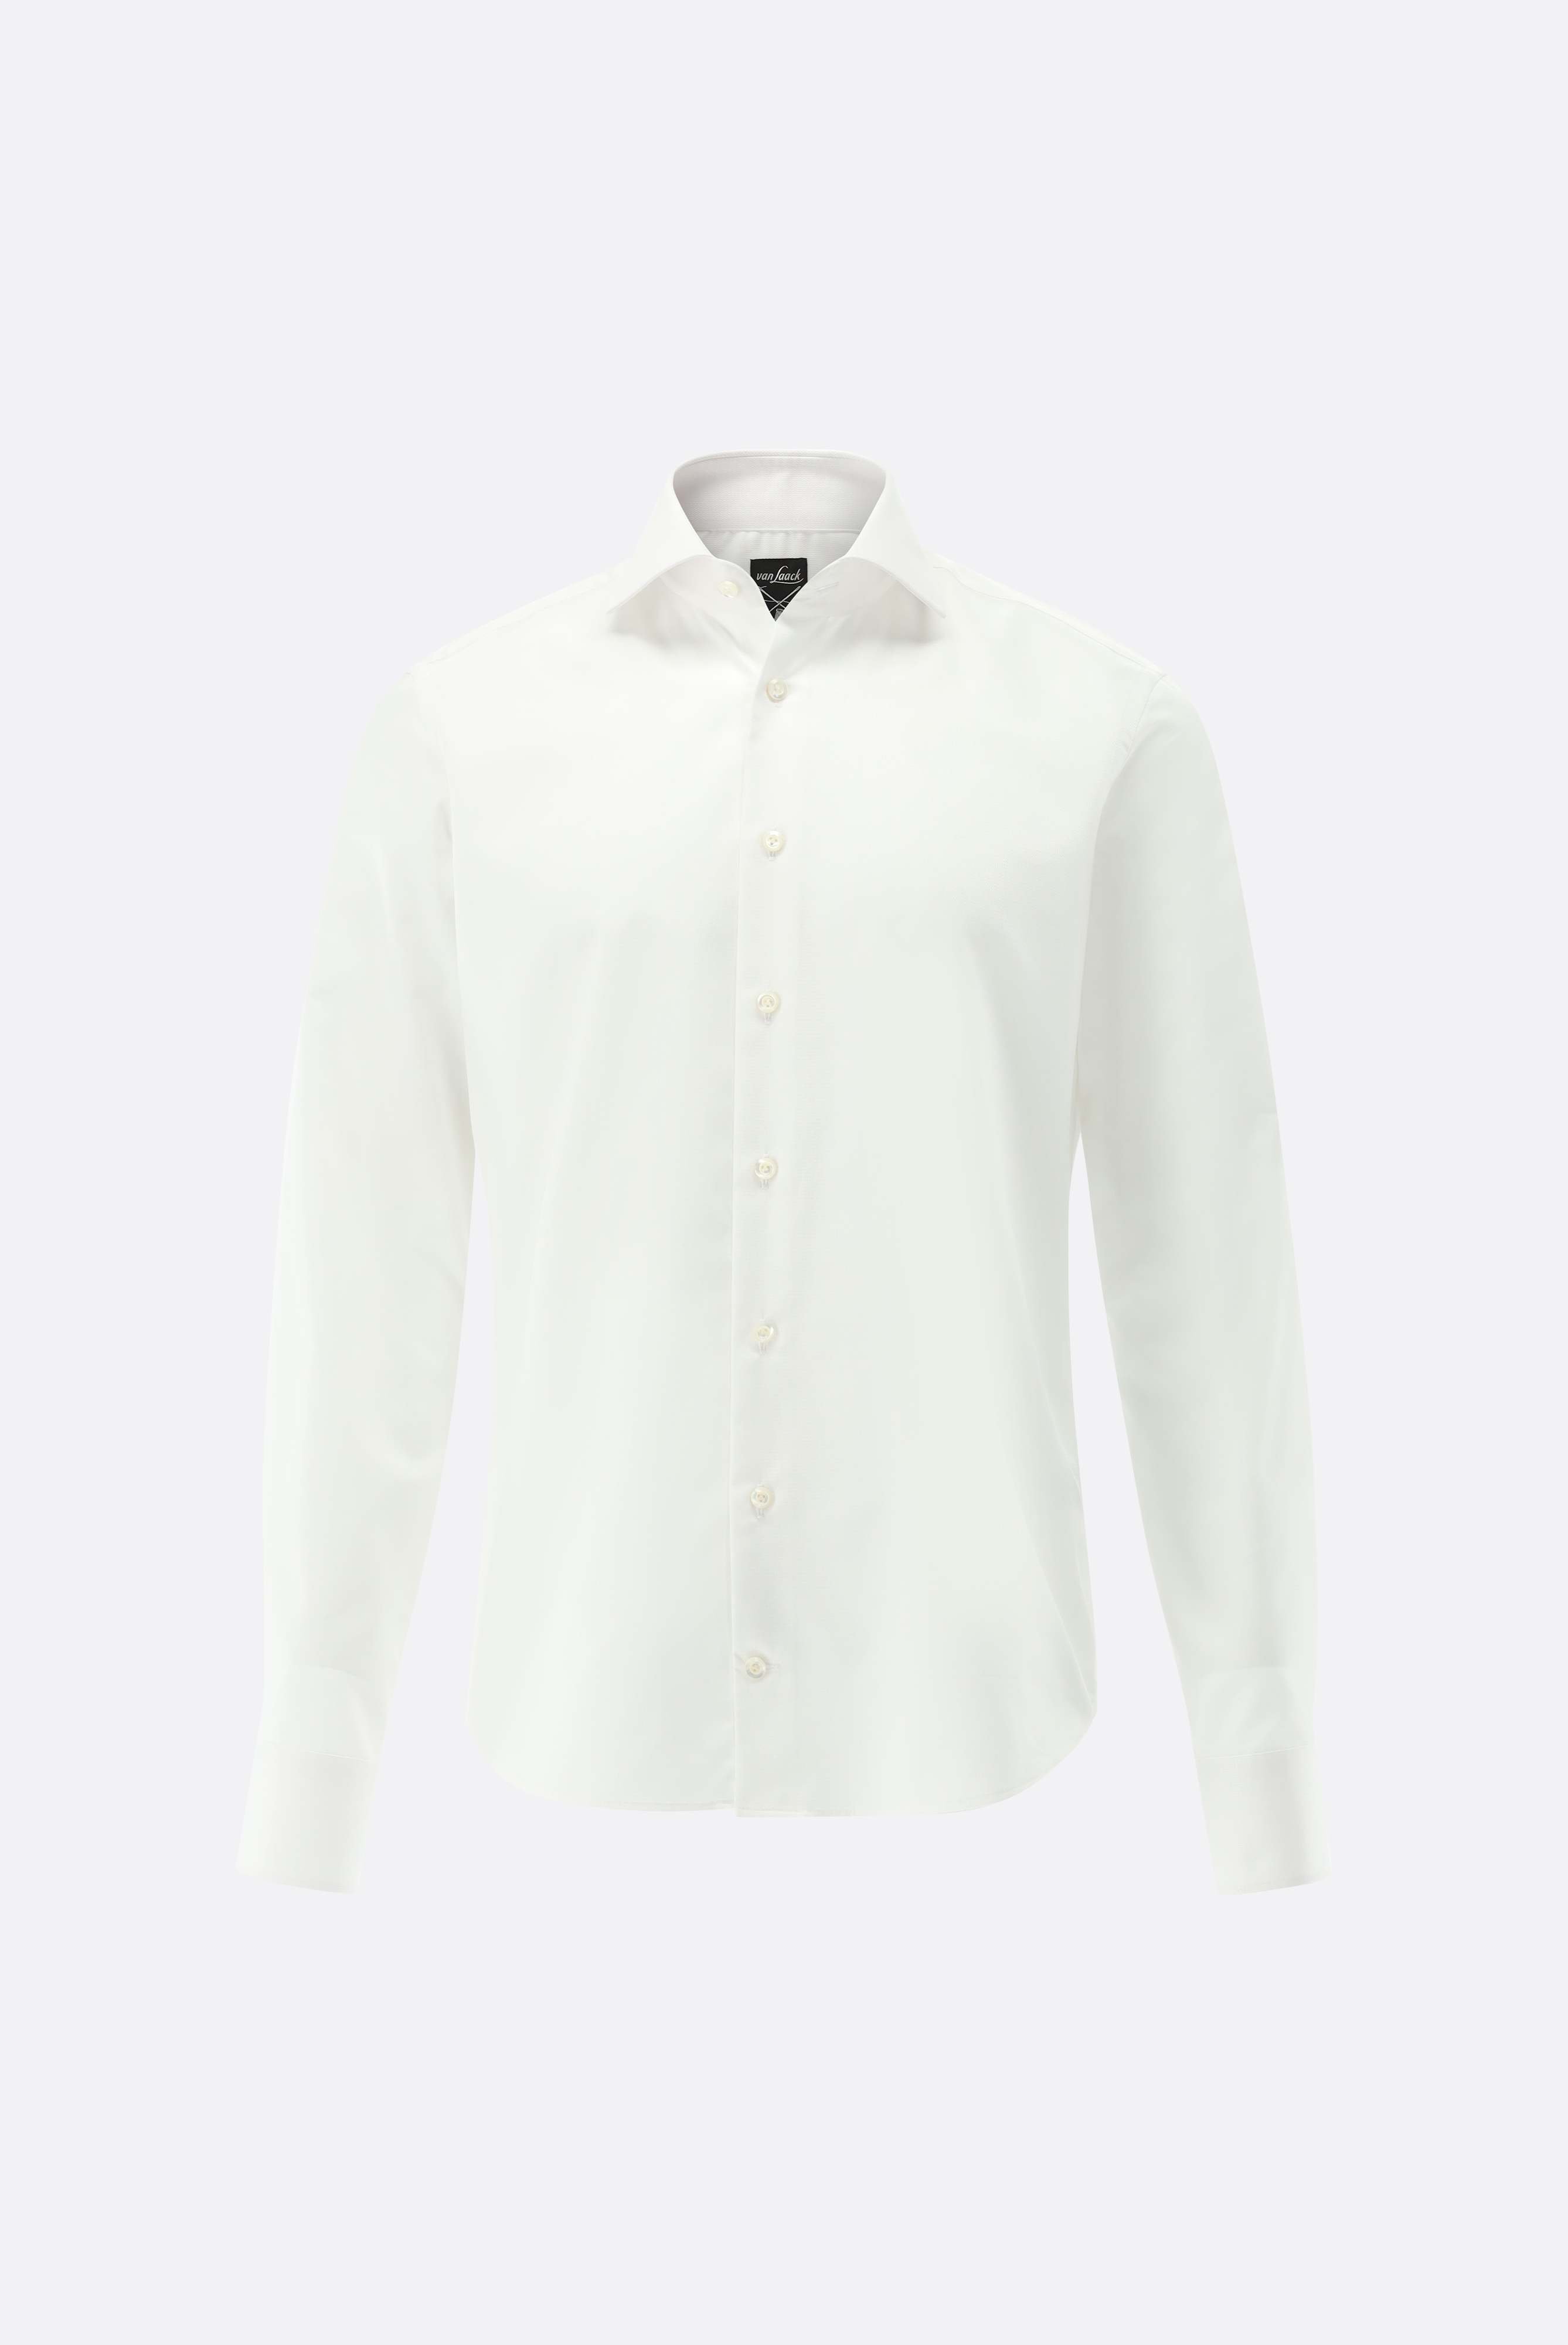 Bügelleichte Hemden+Bügelfreies Twil Hemd mit Struktur Slim Fit+20.2019.BQ.150301.000.44